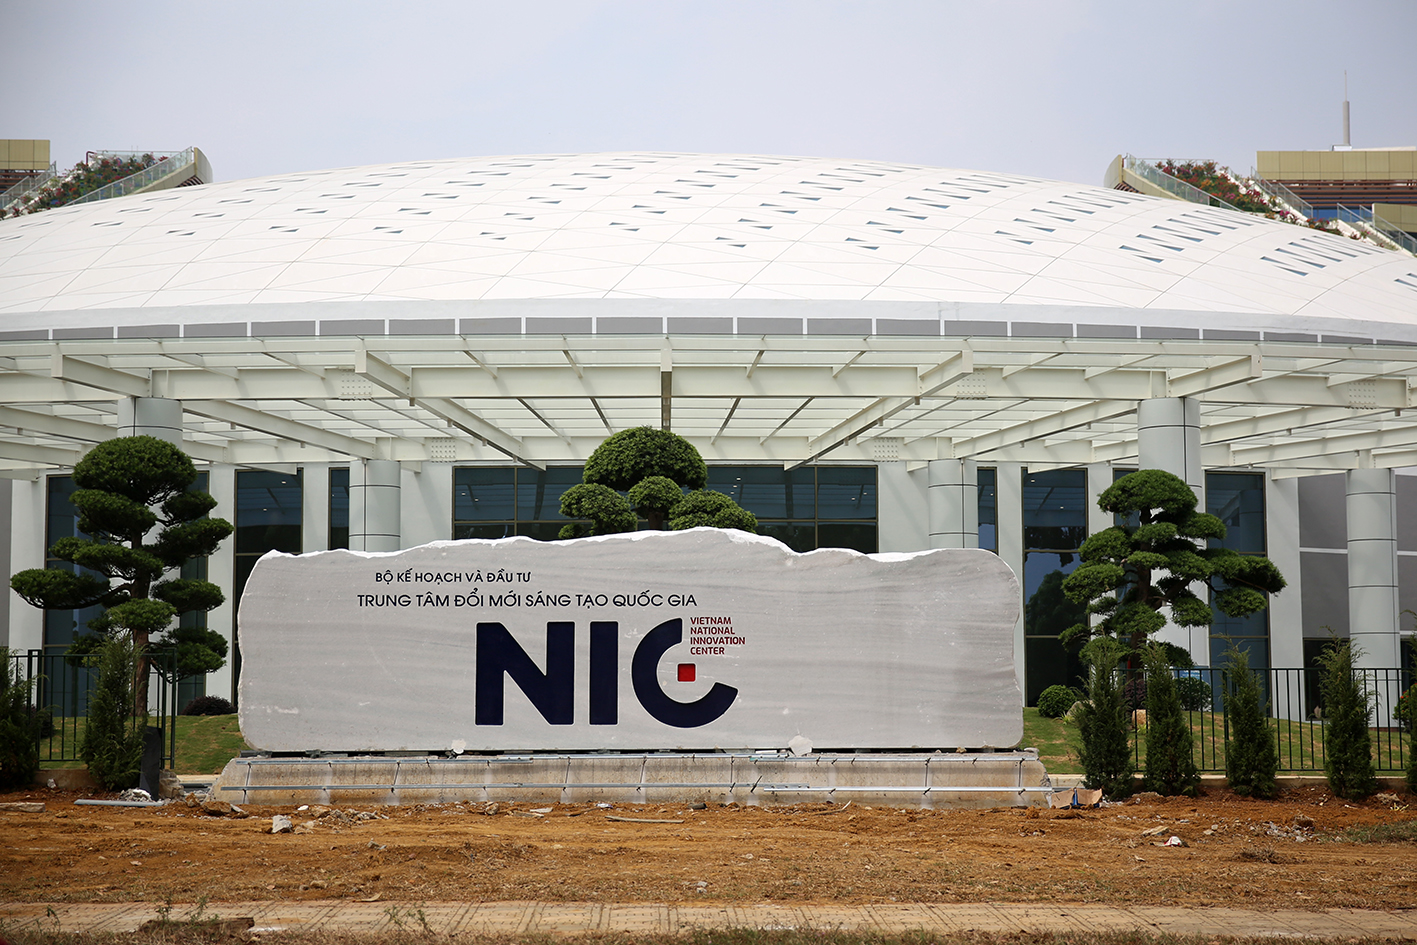 Chiêm ngưỡng Trung tâm Đổi mới sáng tạo Quốc gia hiện đại nhất Việt nam - Ảnh 13.